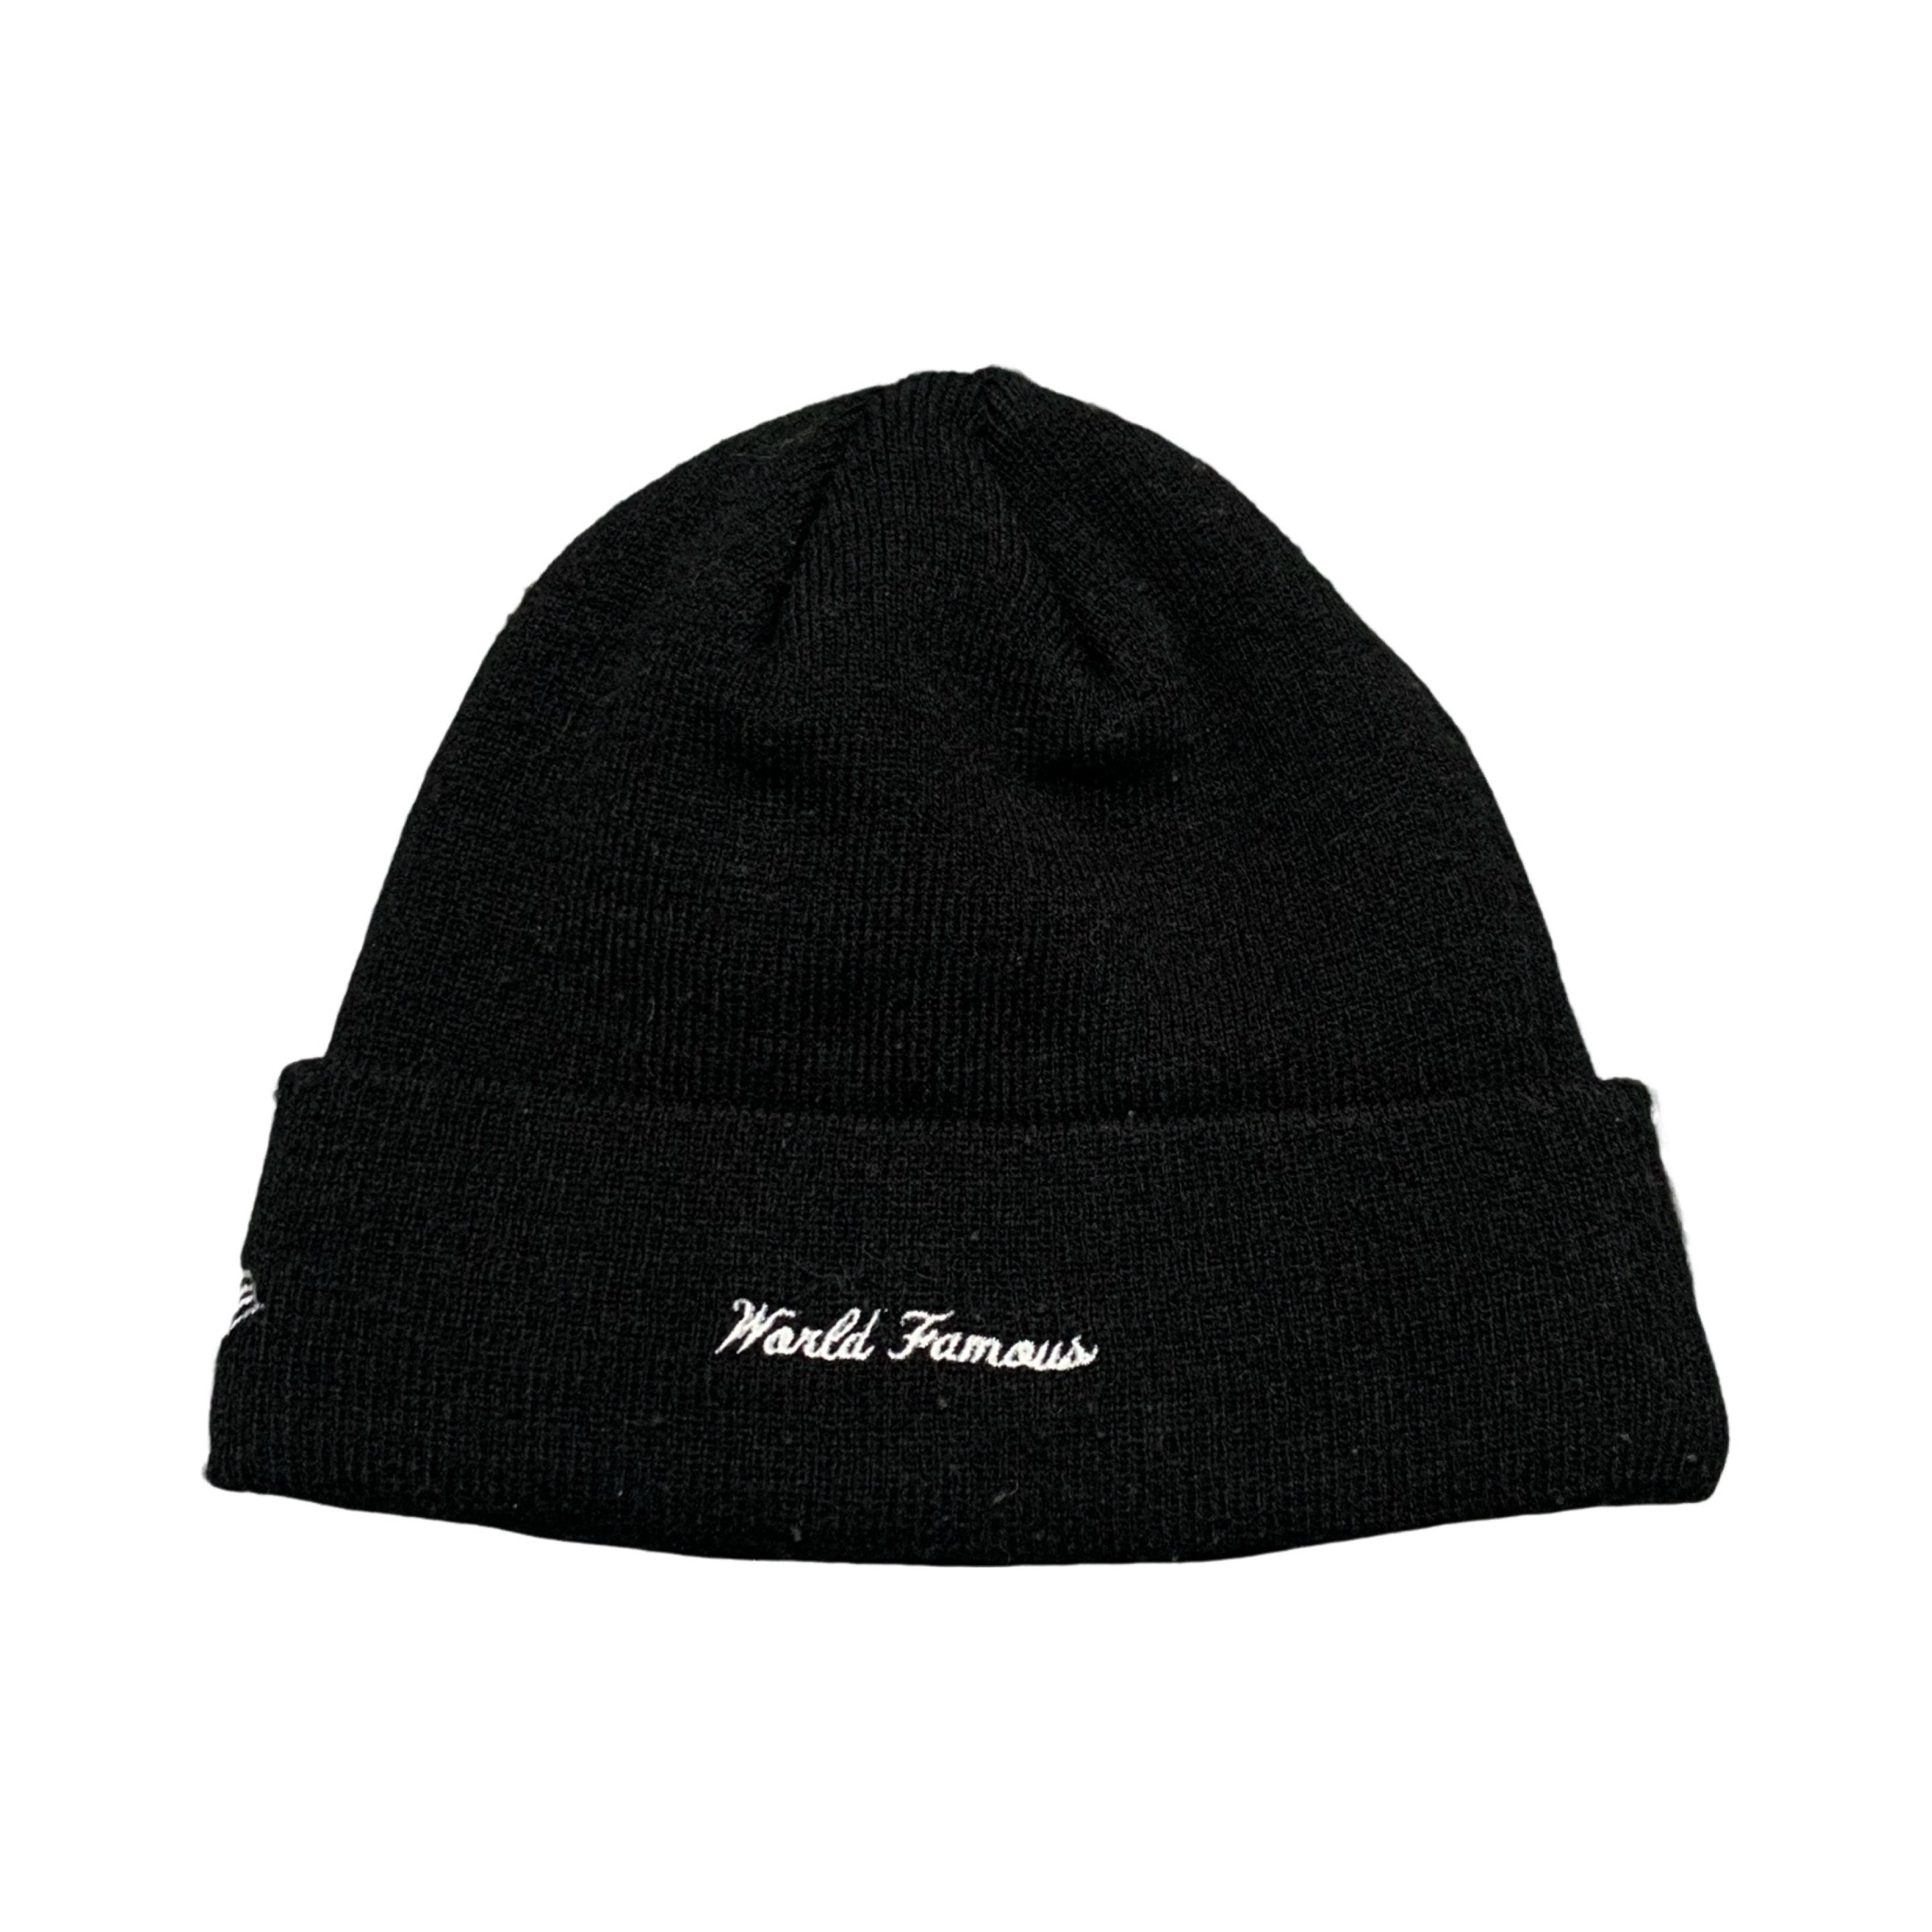 Supreme Beanie Box Logo New Era Black Beanie Hat